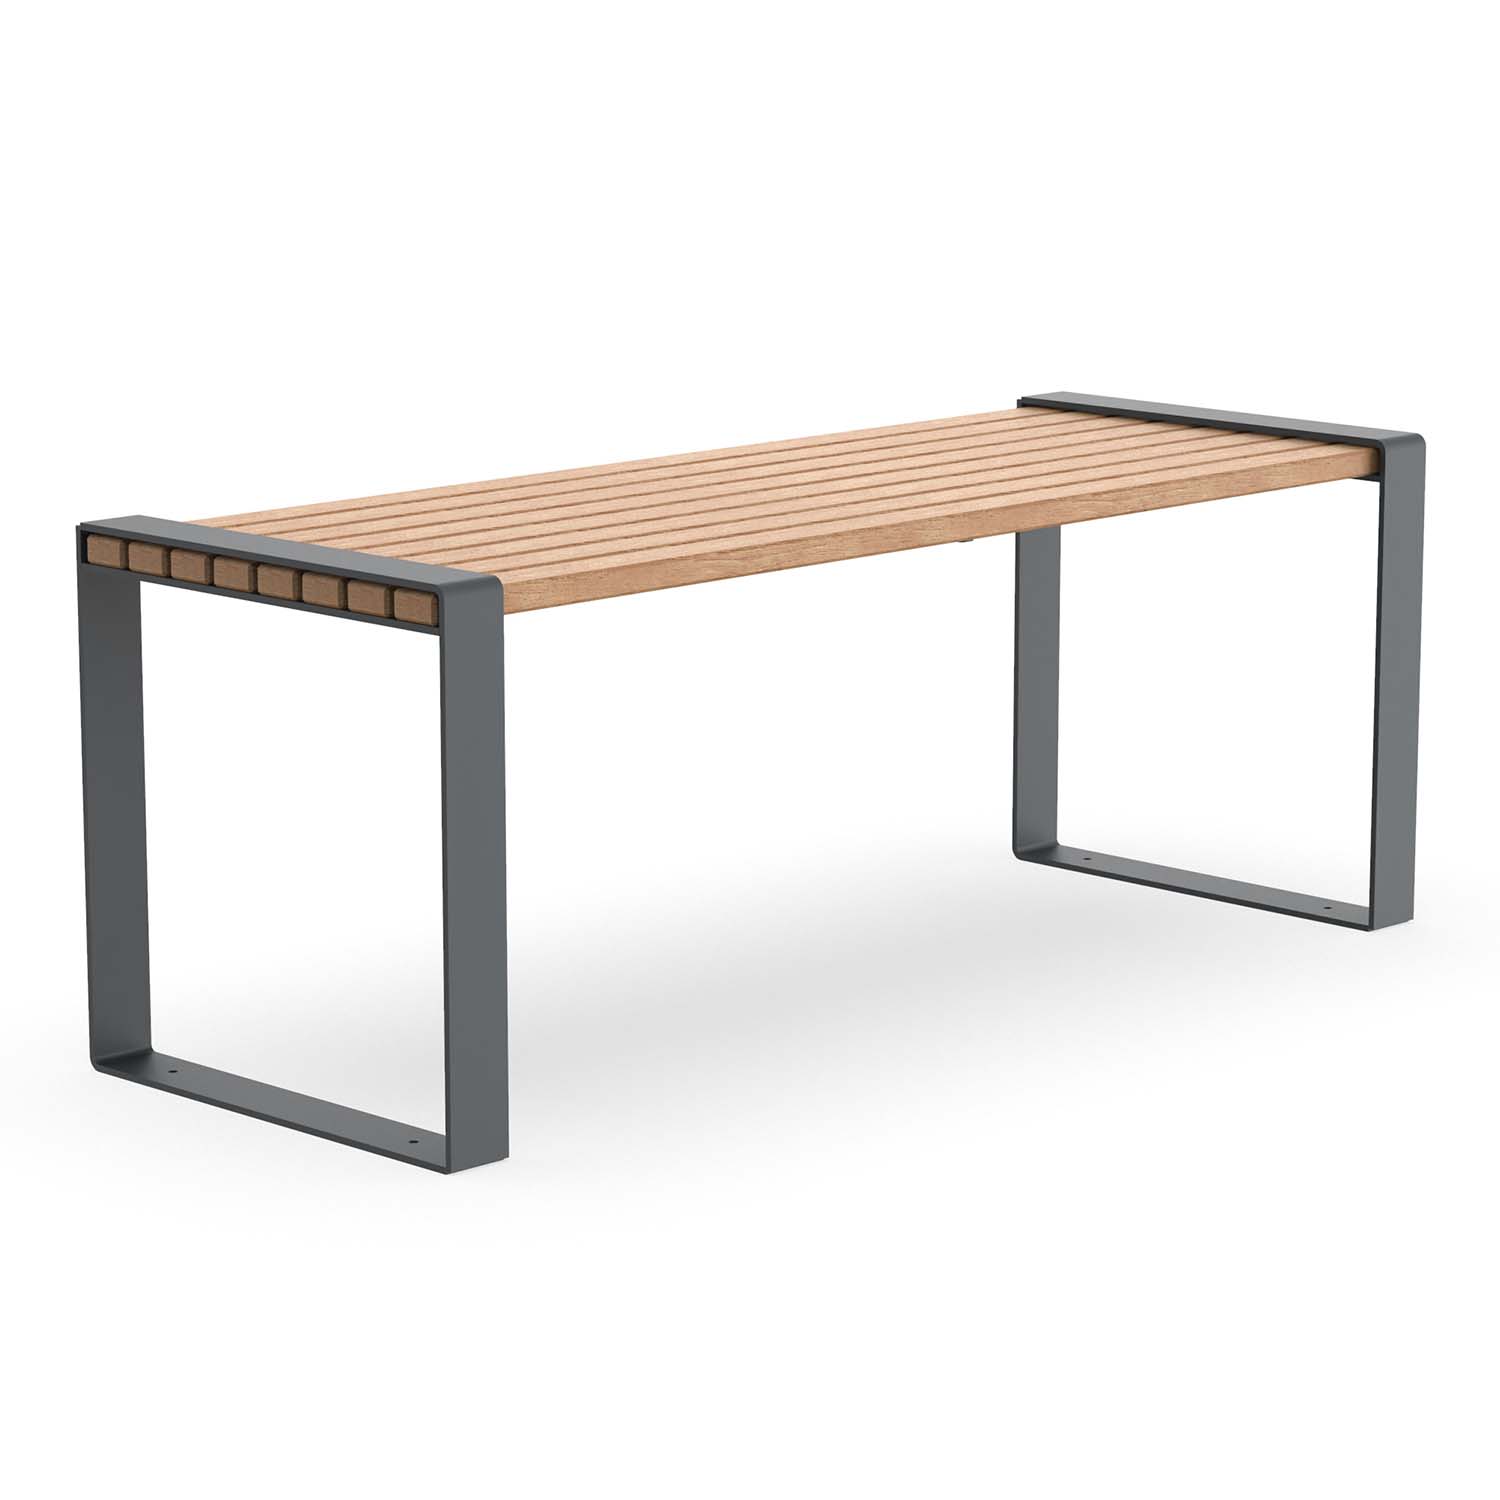 Tisch für Parkbank CONSOLA, Flachstahl, Tischfläche aus Holz, farbbeschichtet